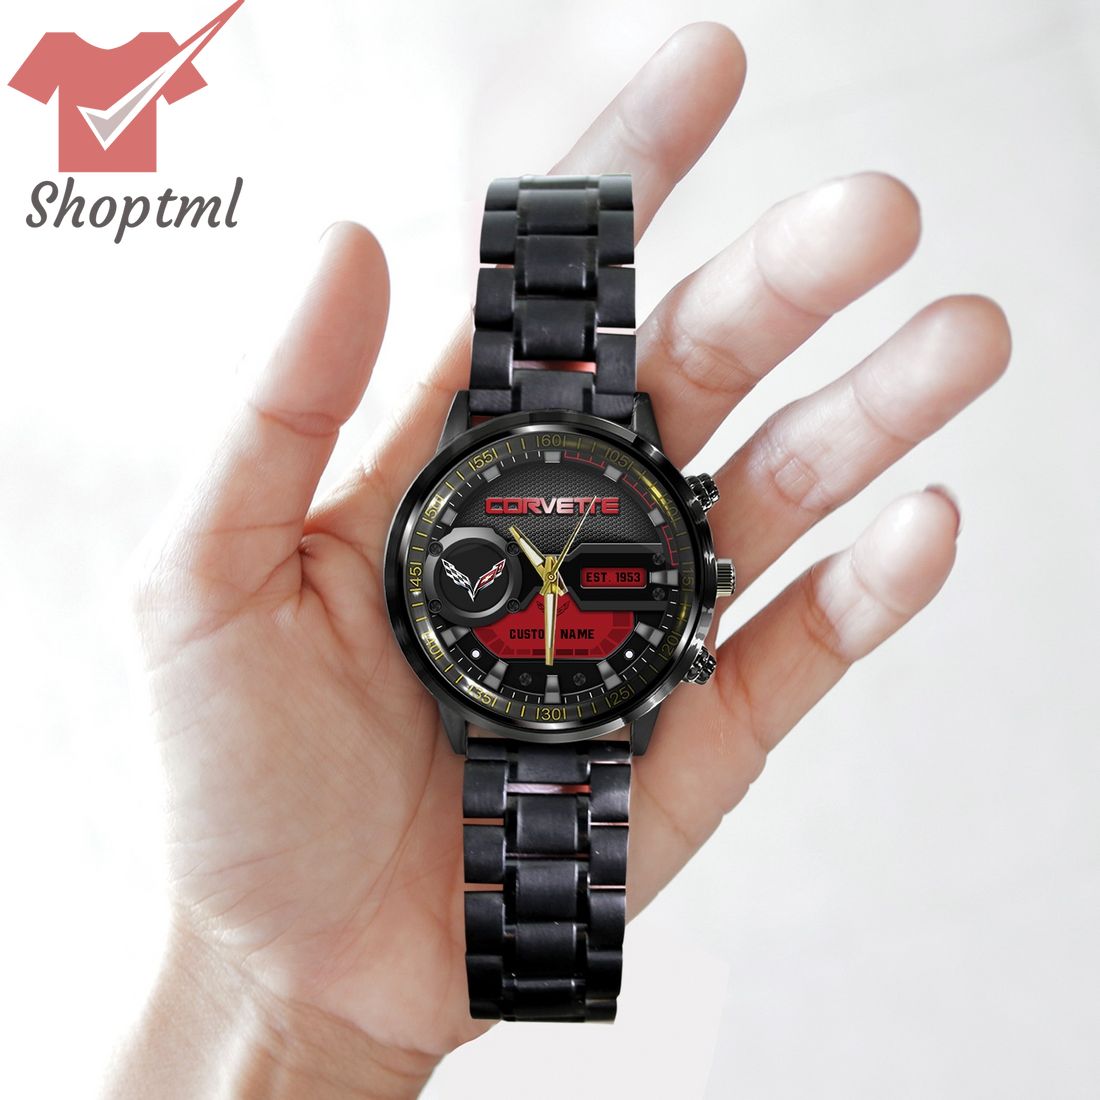 Corvette est 1953 custom name black stainless steel watch